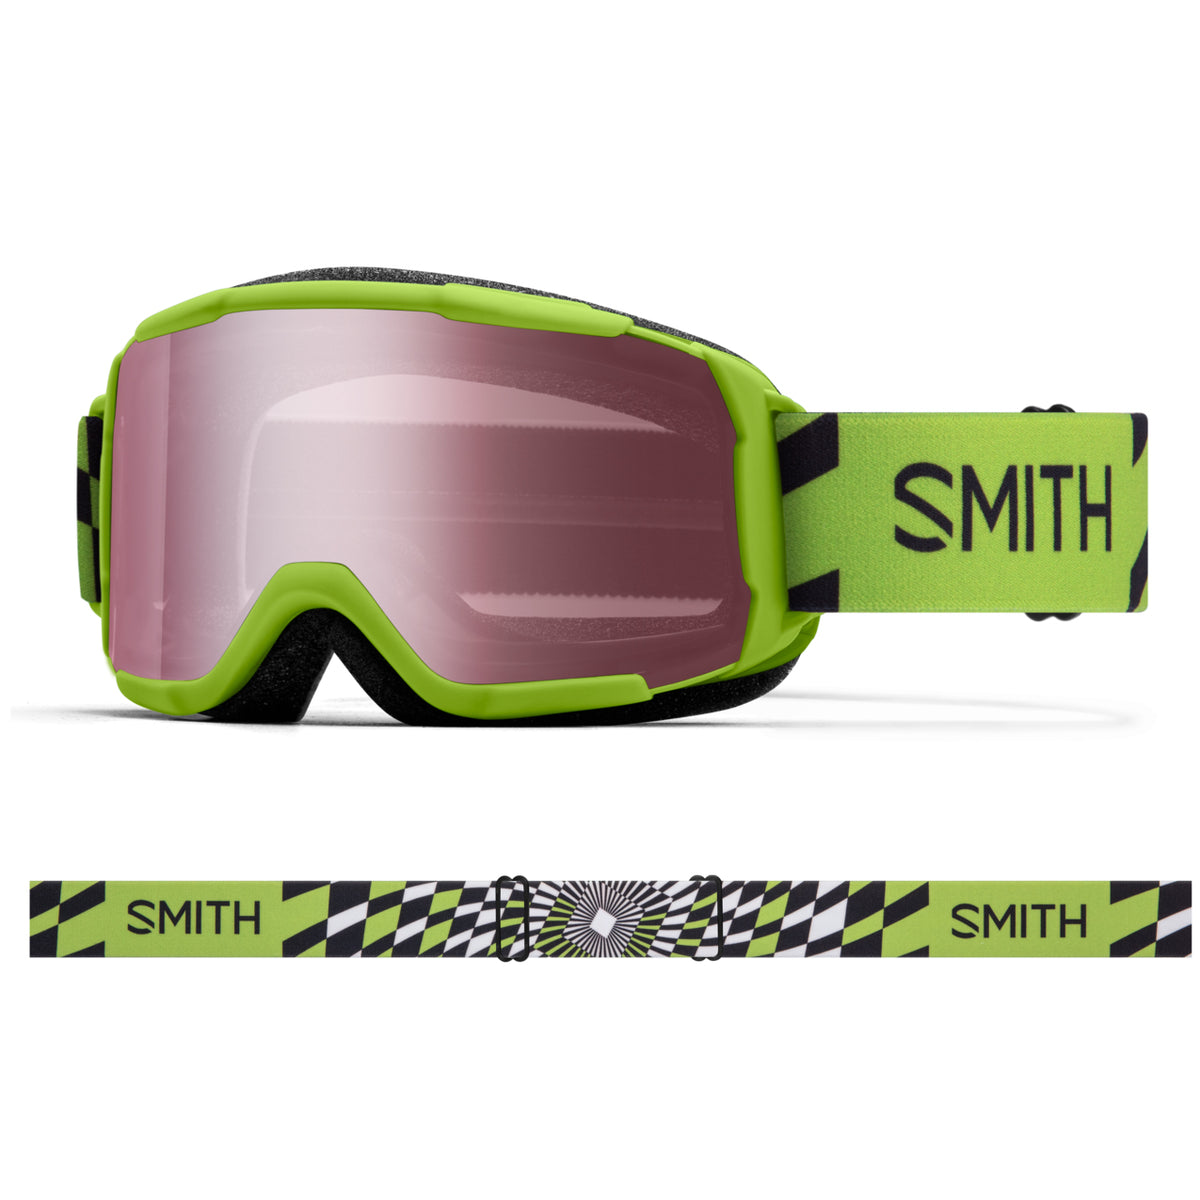 Smith Optics Youth Daredevil Goggles